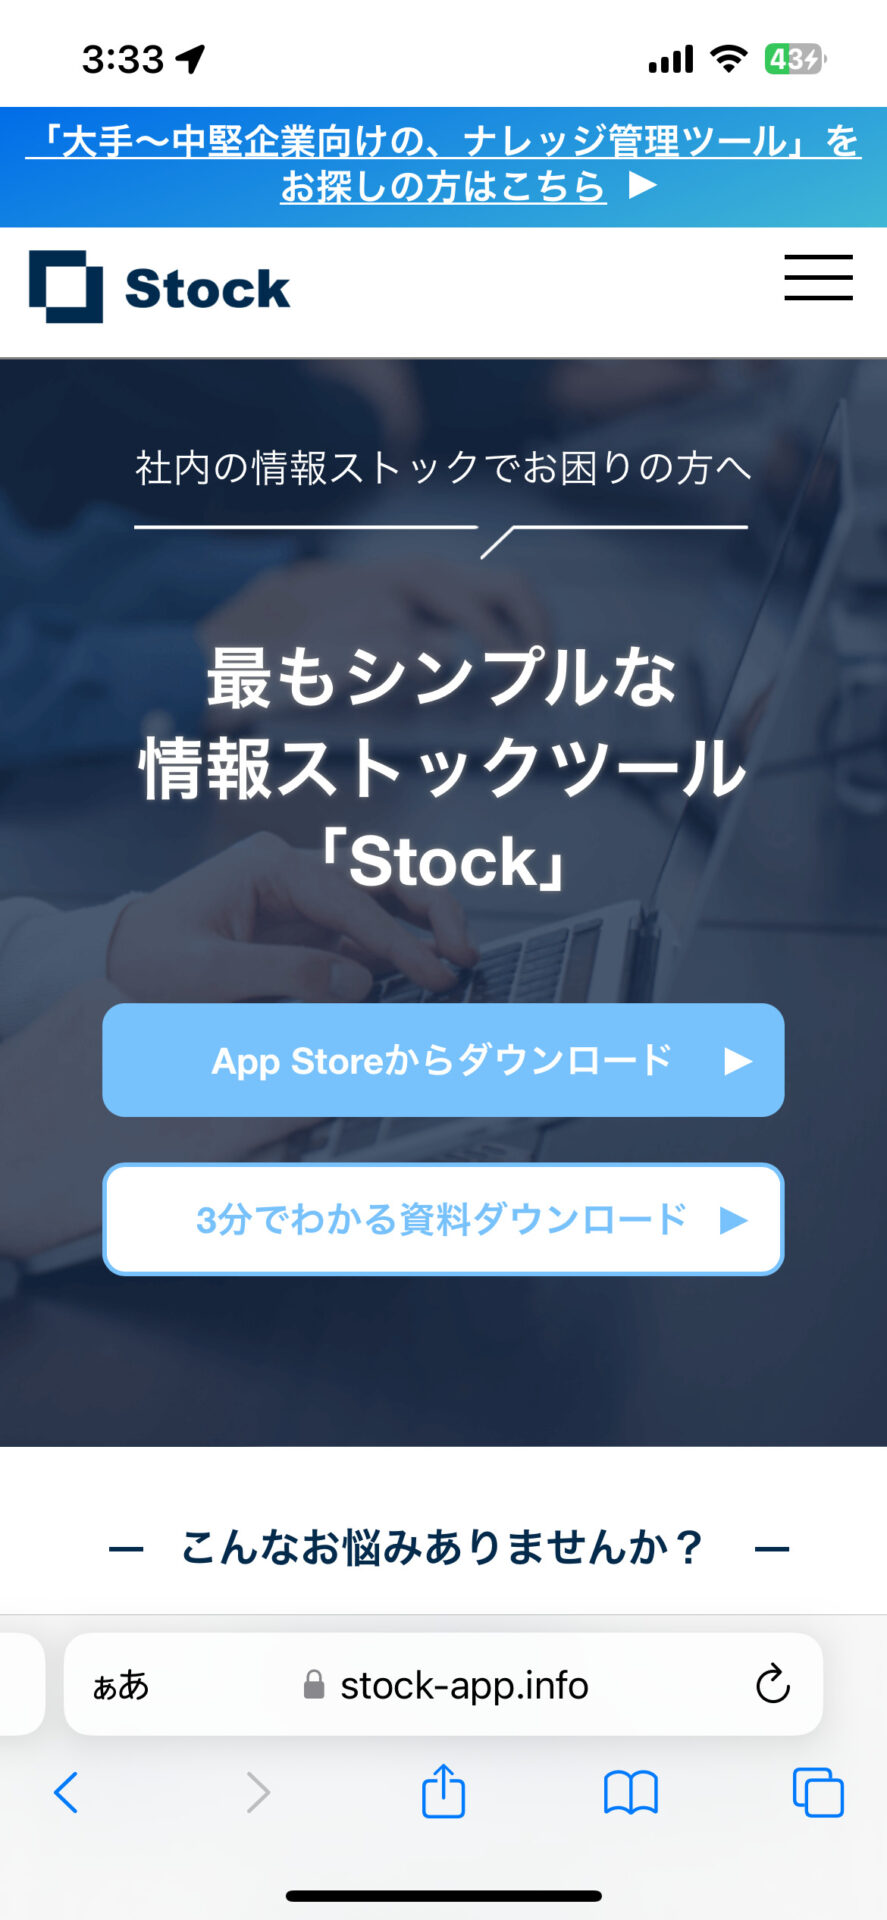 Stockのトップページ画面